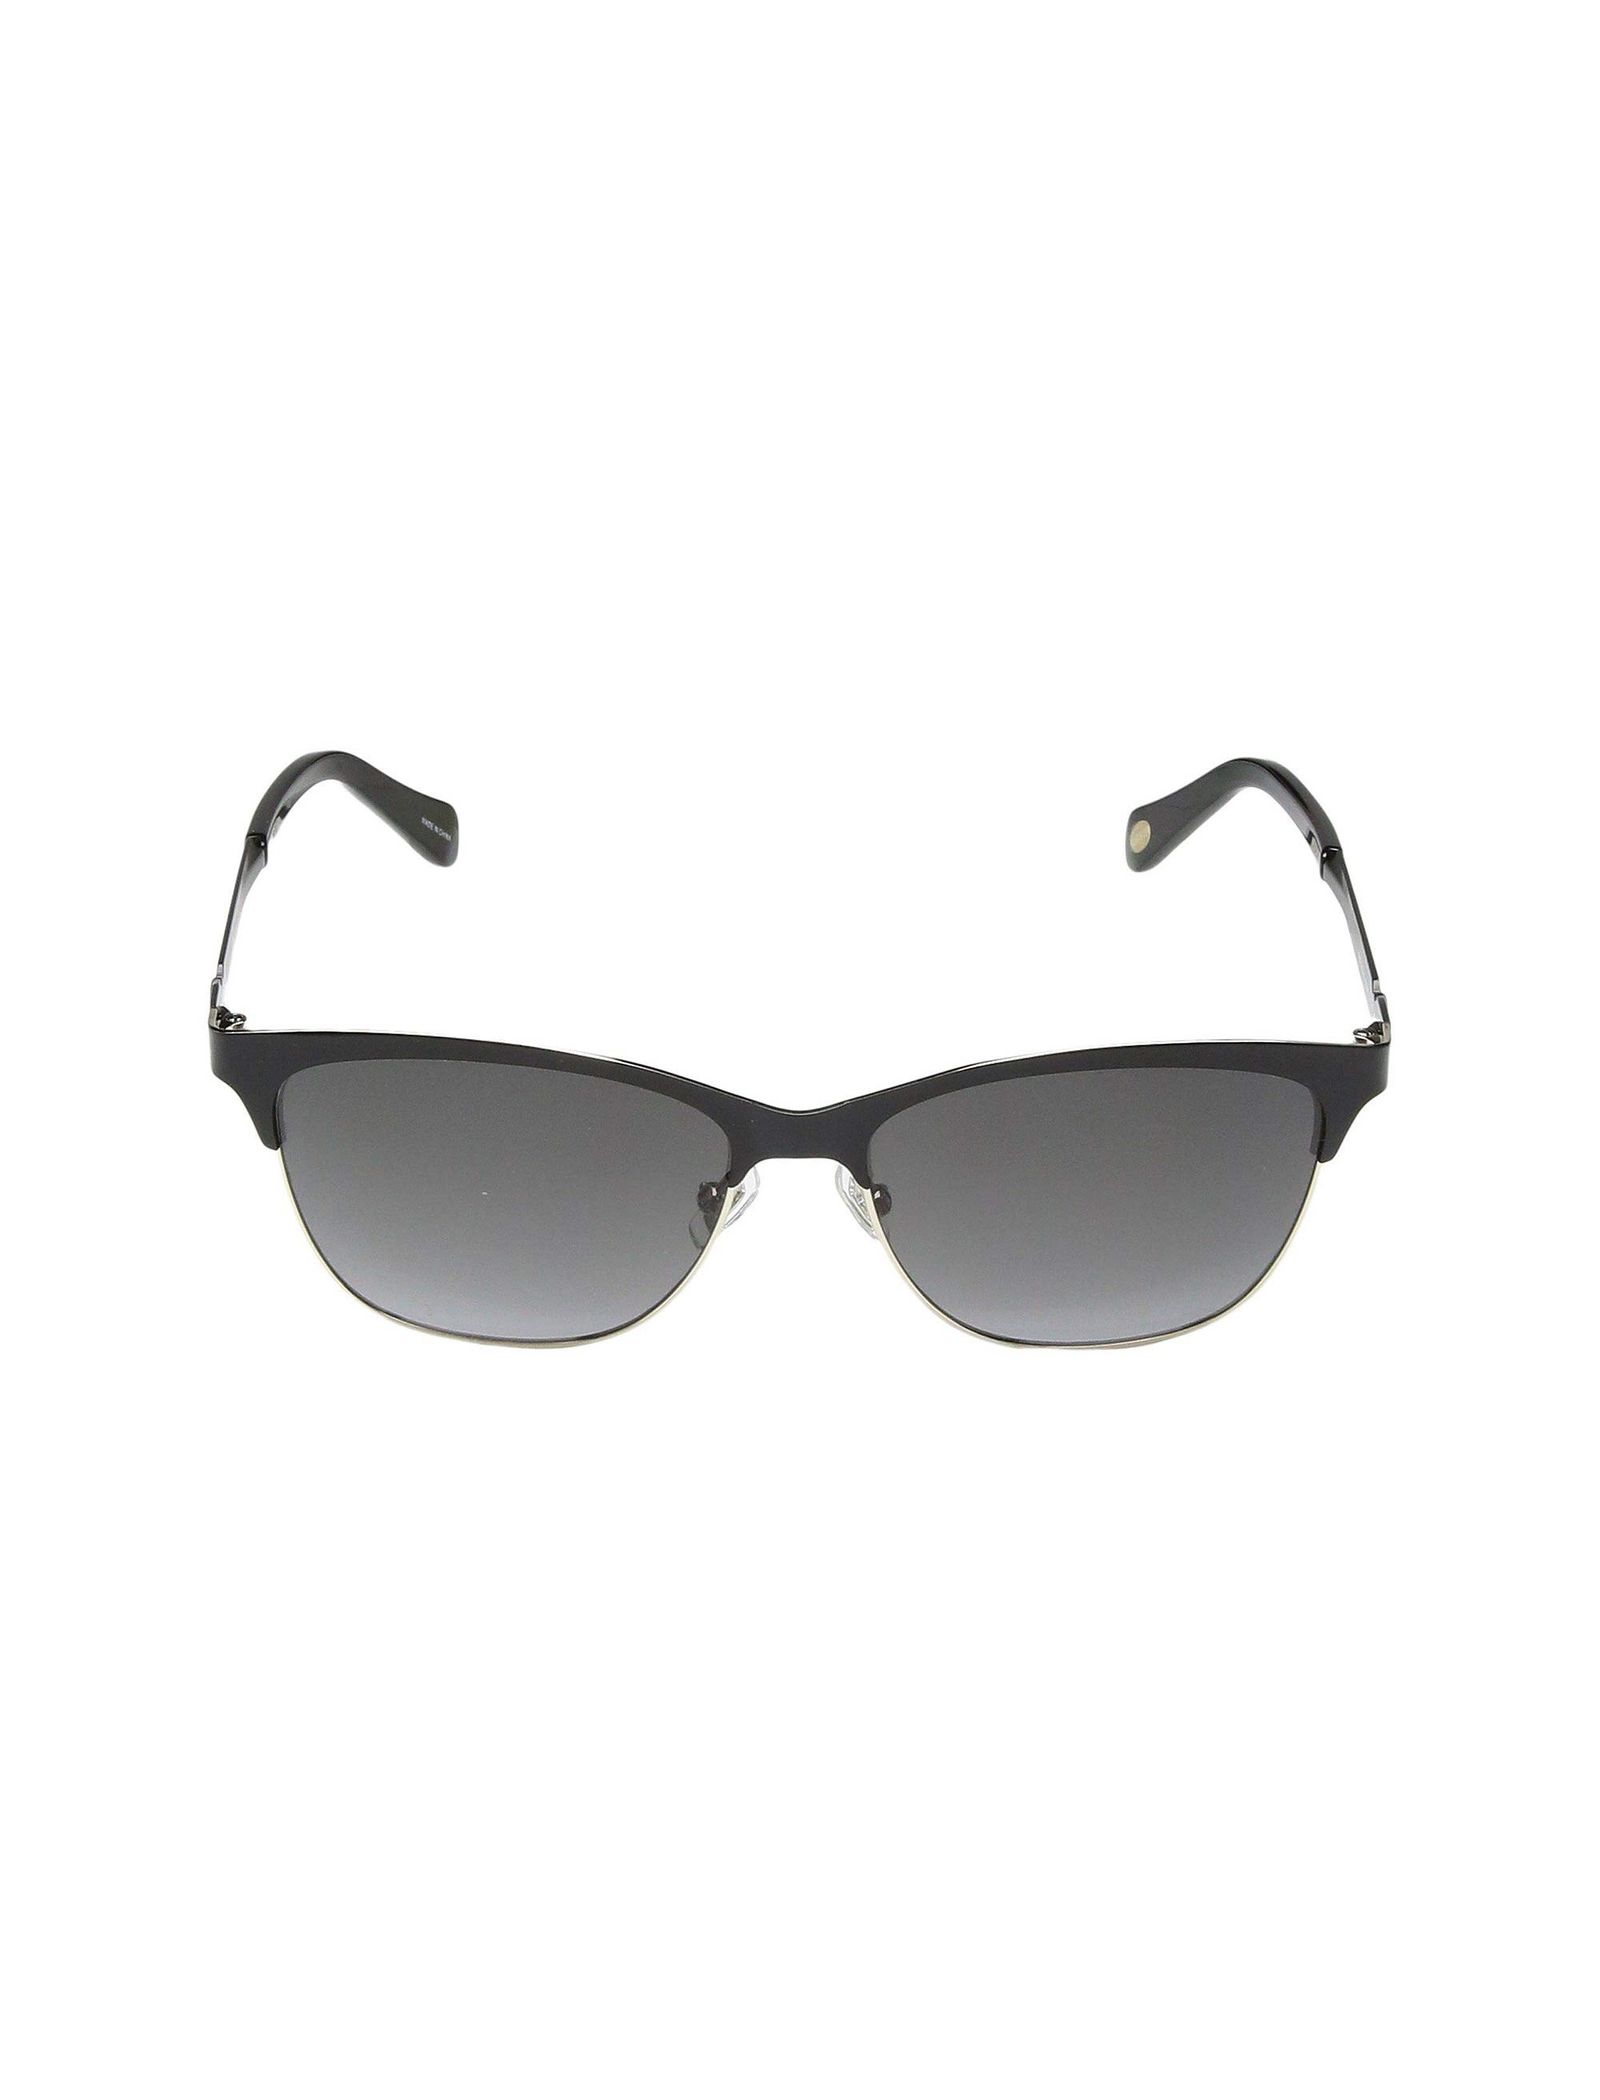 عینک آفتابی مربعی زنانه - فسیل - مشکي - 2